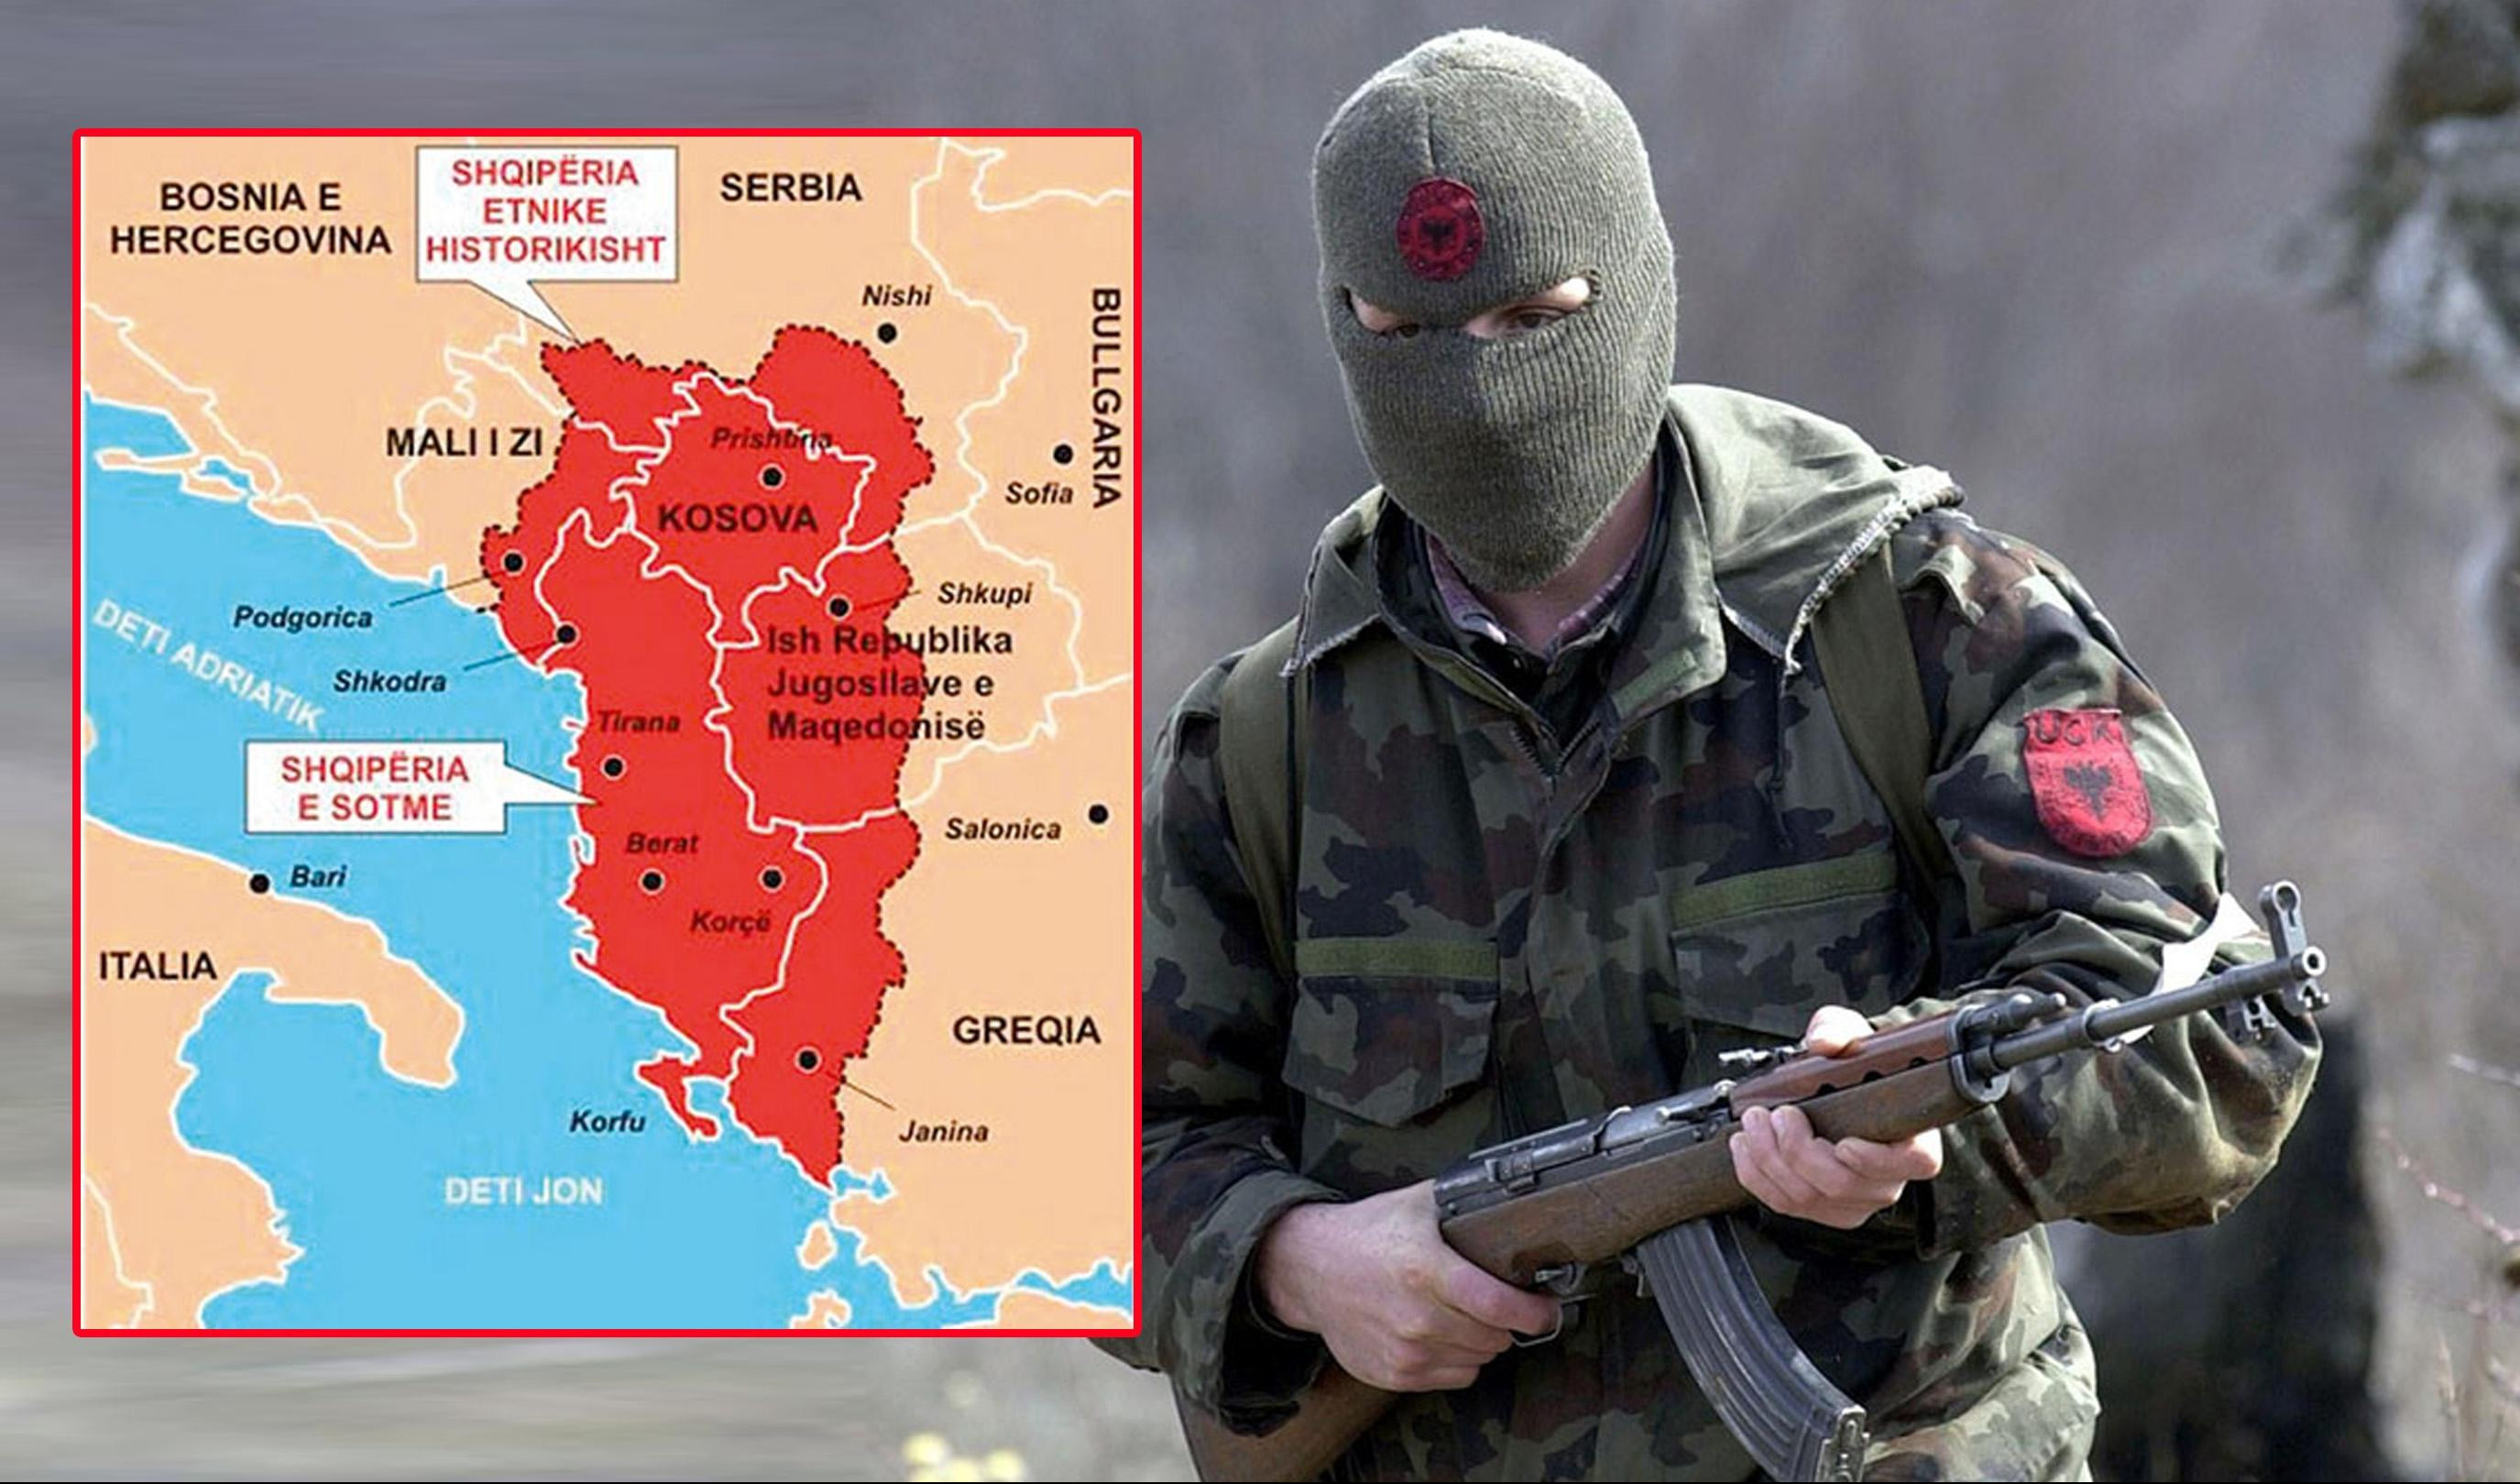 POVERLJIVE INFORMACIJE IZ NATO O SUKOBU 1999: Albanija napala Srbiju - RATOVALI SU ZA PRESTONICU SRPSKOG CARA! DAN O KOME SE NE PRIČA!